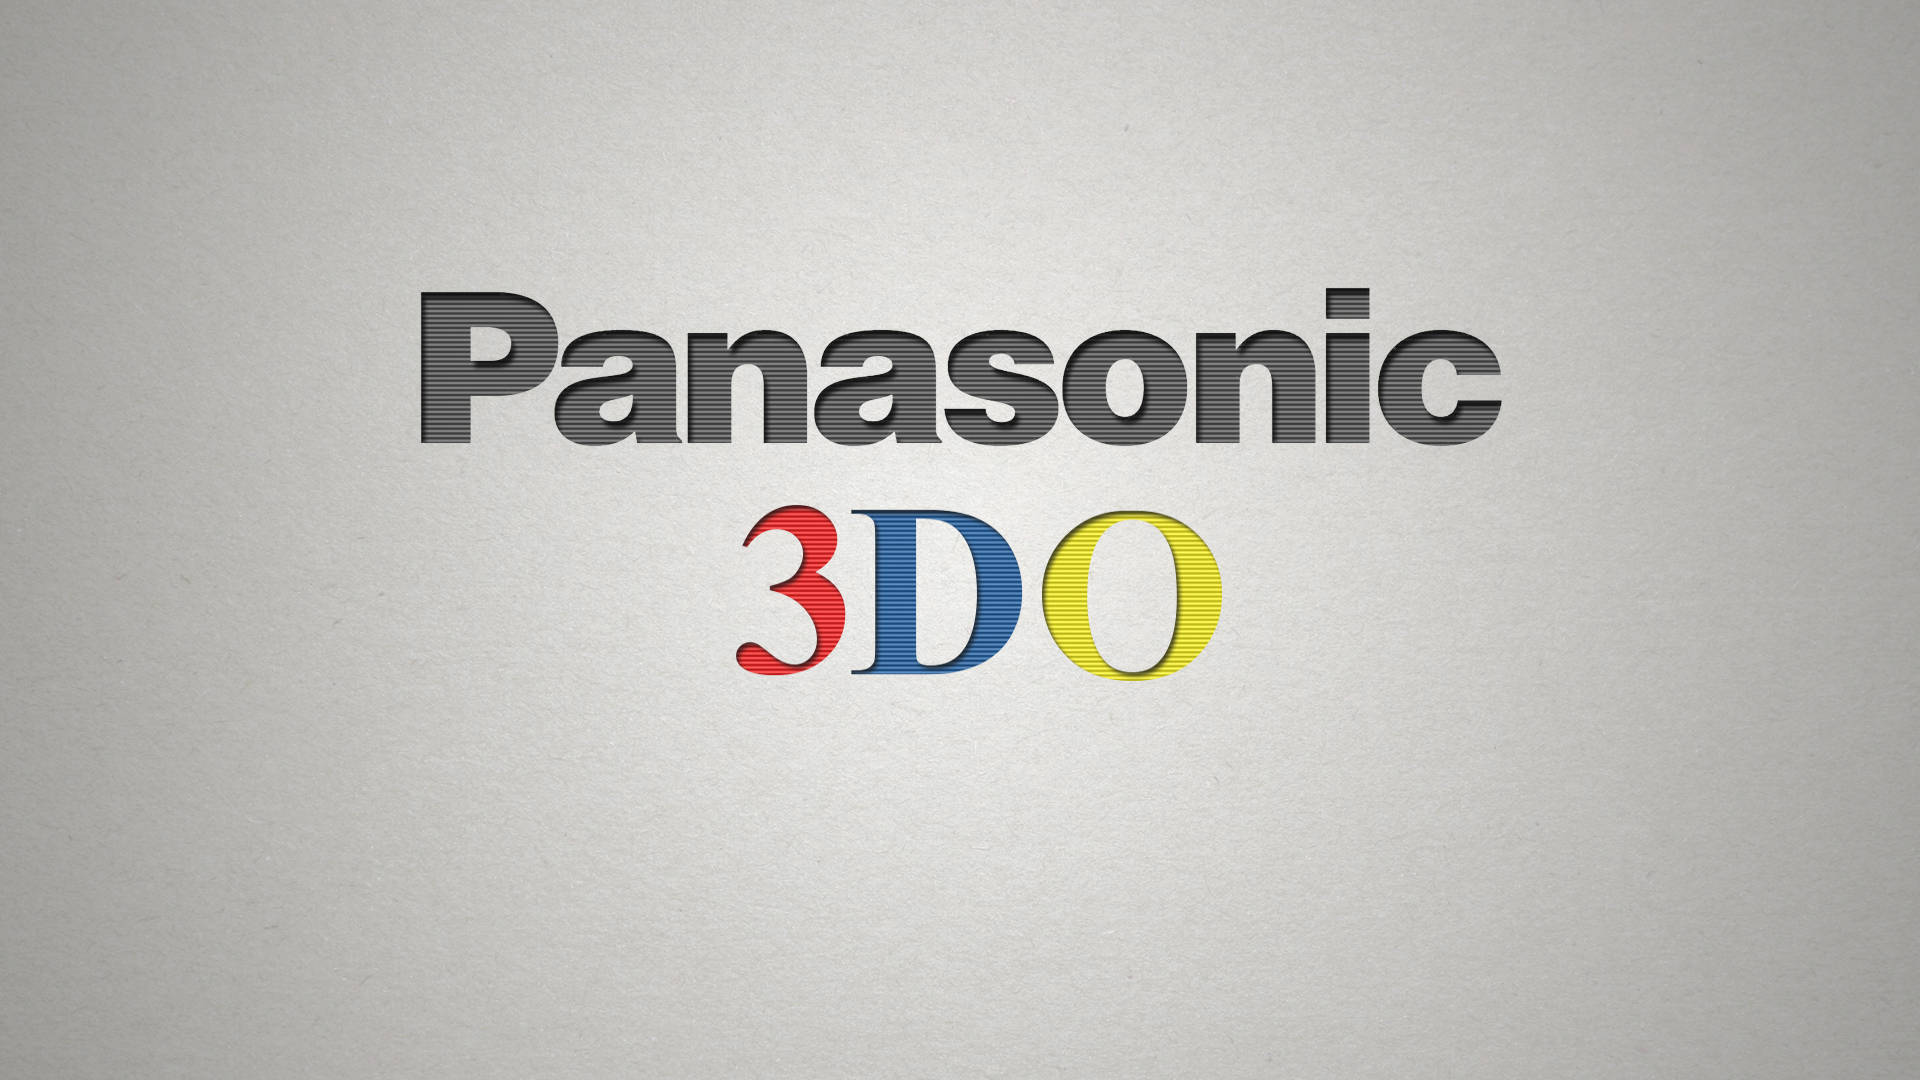 Panasonicgrå 3do. Wallpaper